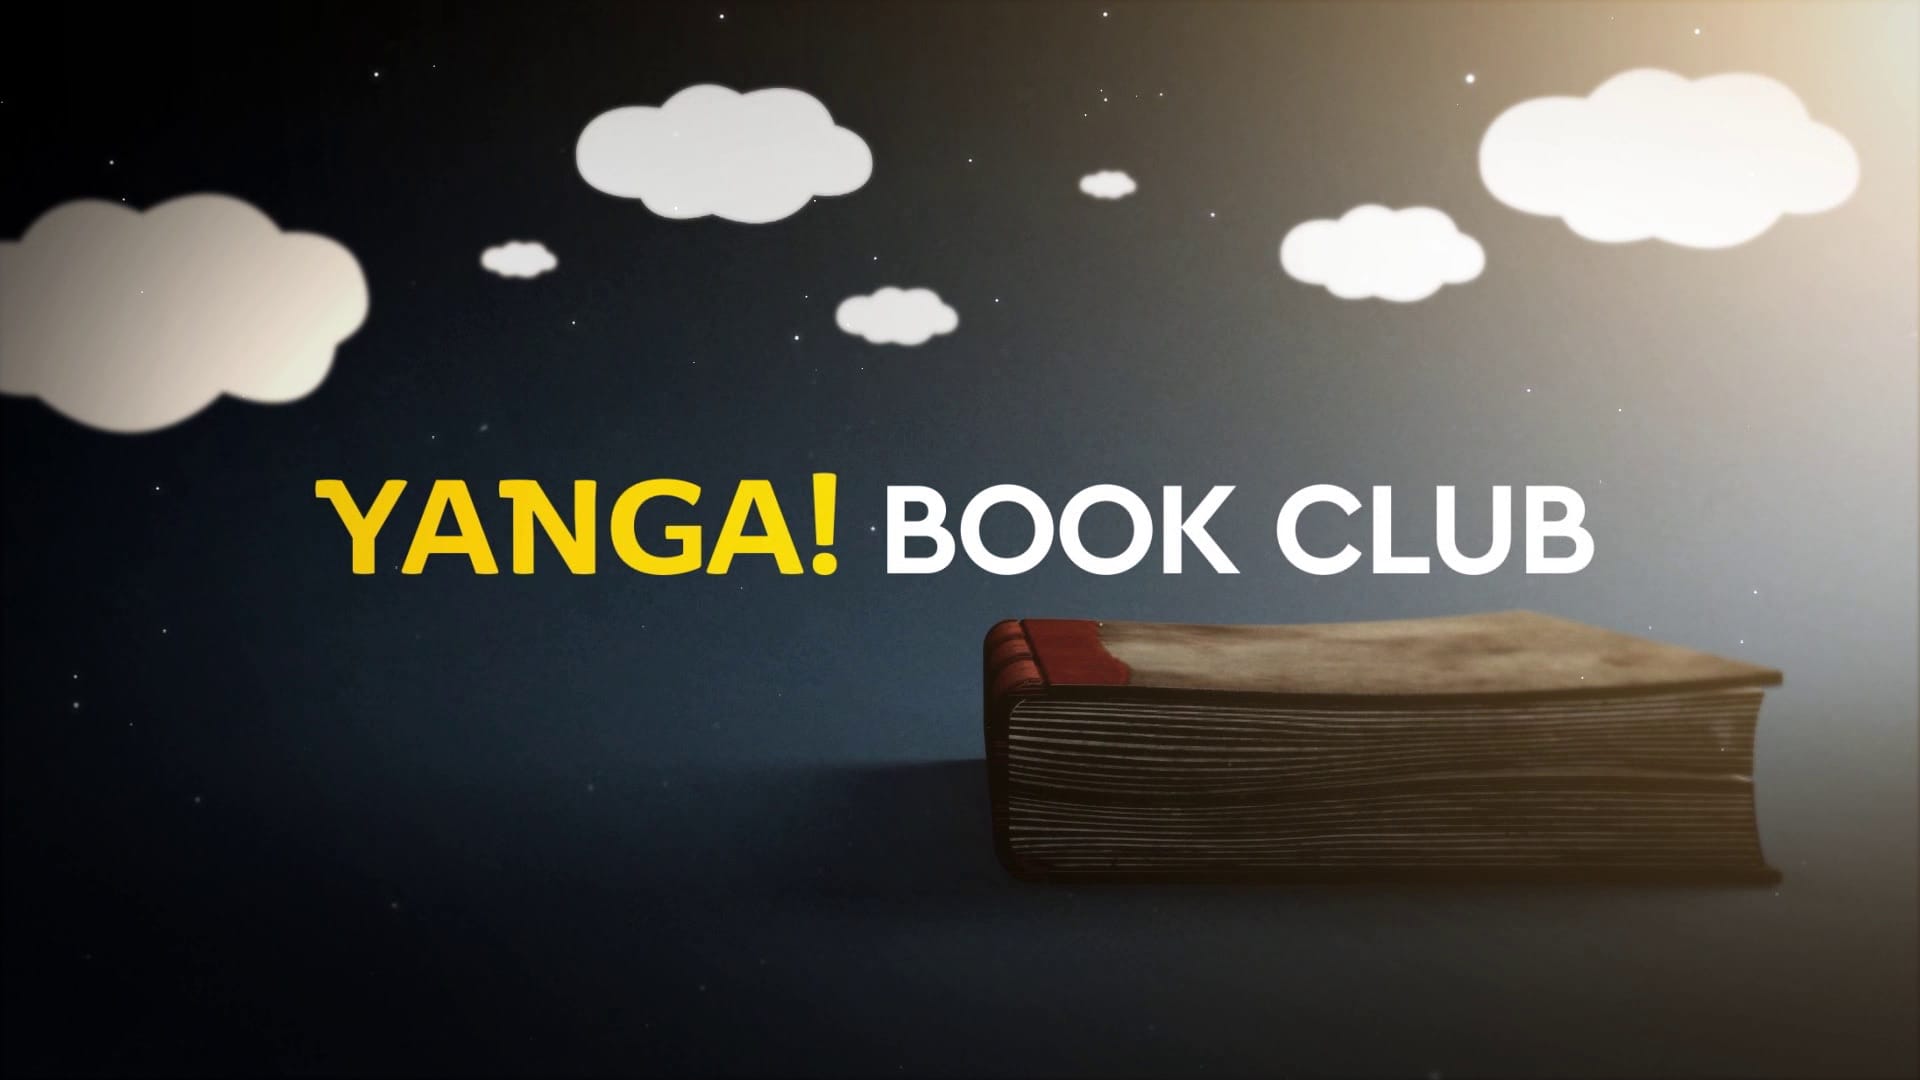 Yanga! Book Club